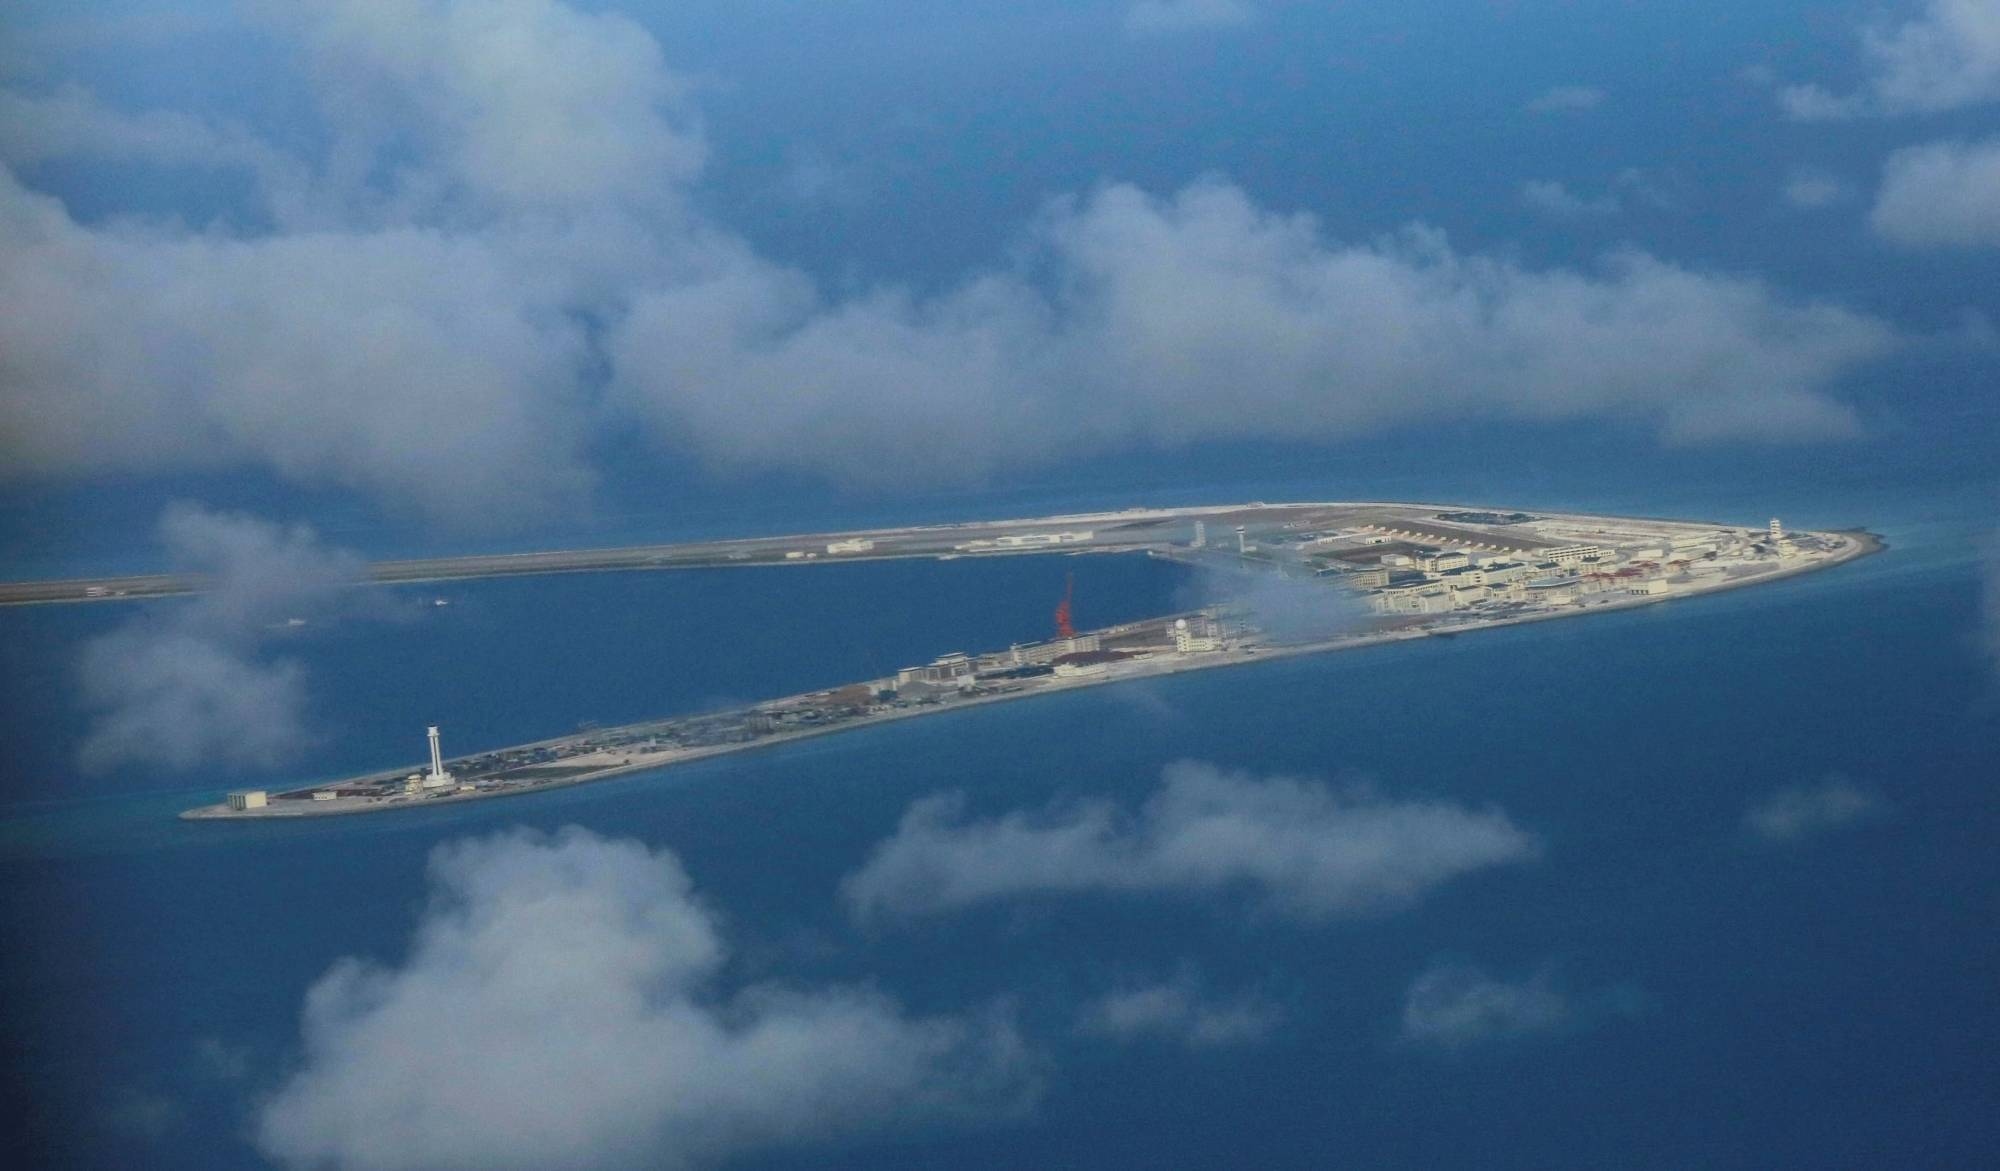 Nhật Bản kiên quyết bảo vệ phán quyết của PCA về vấn đề Biển Đông